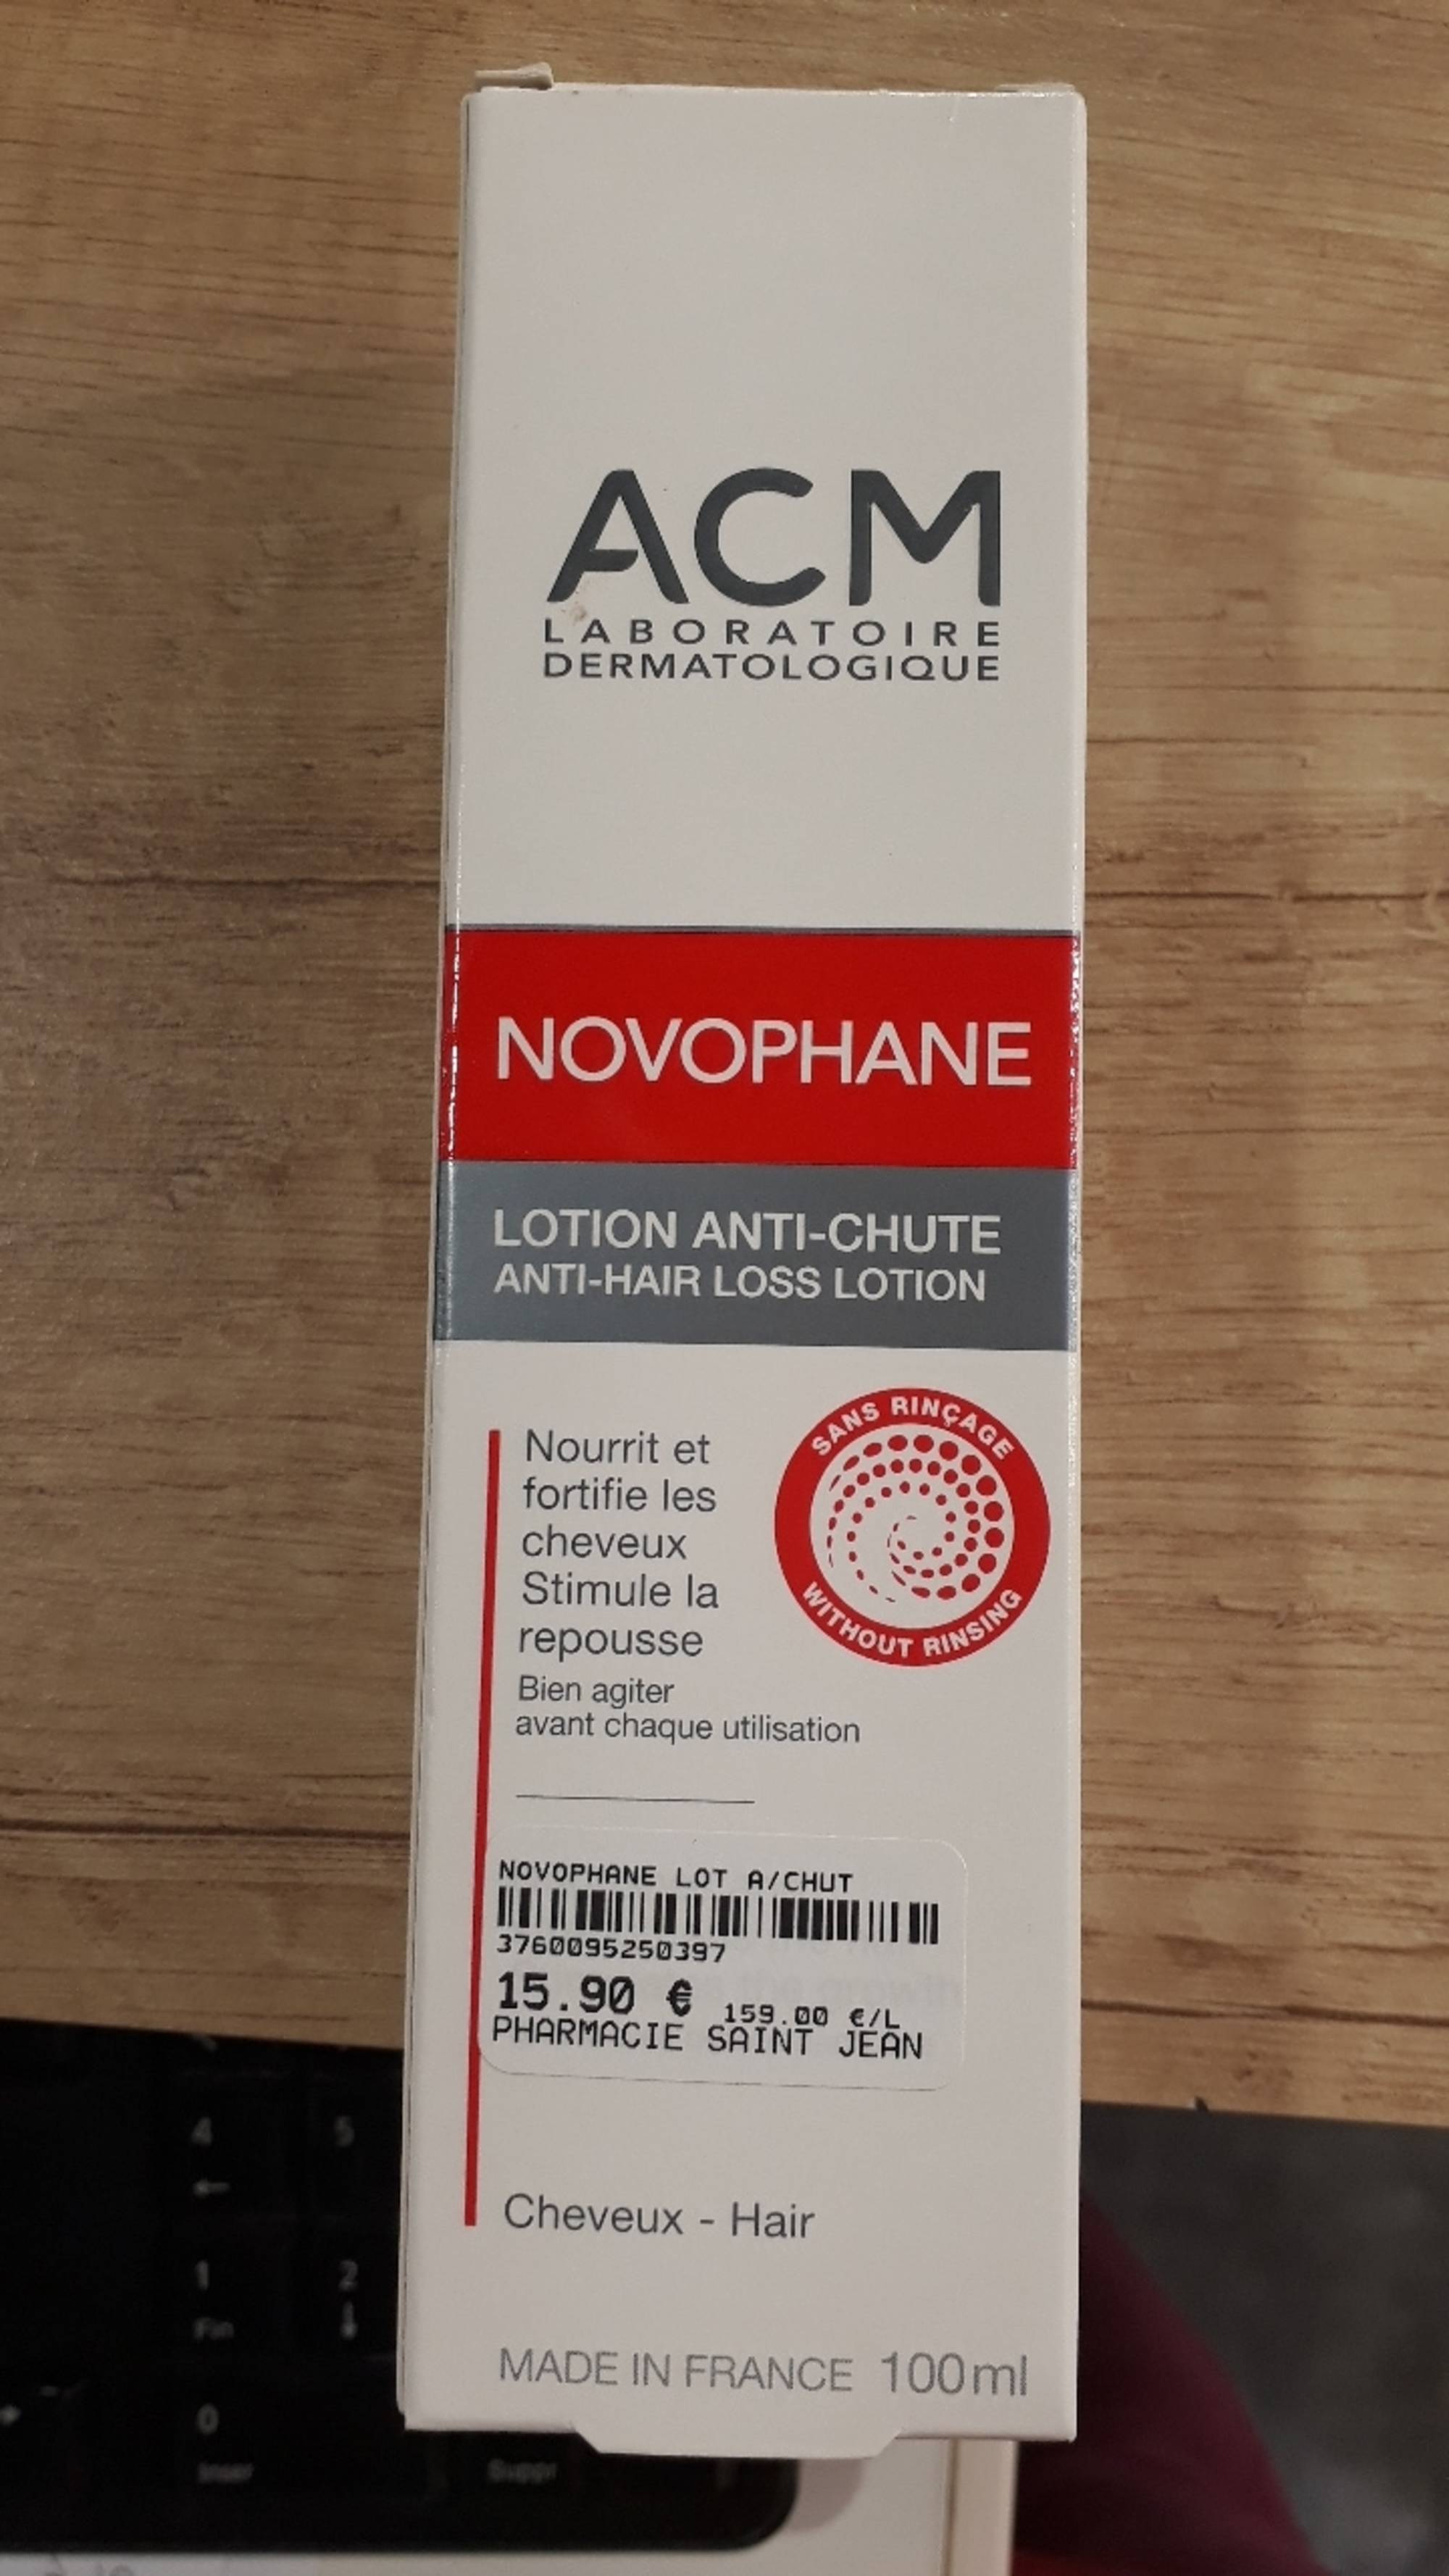 ACM LABORATOIRE DERMATOLOGIQUE - Novophane - Lotion anti-chute